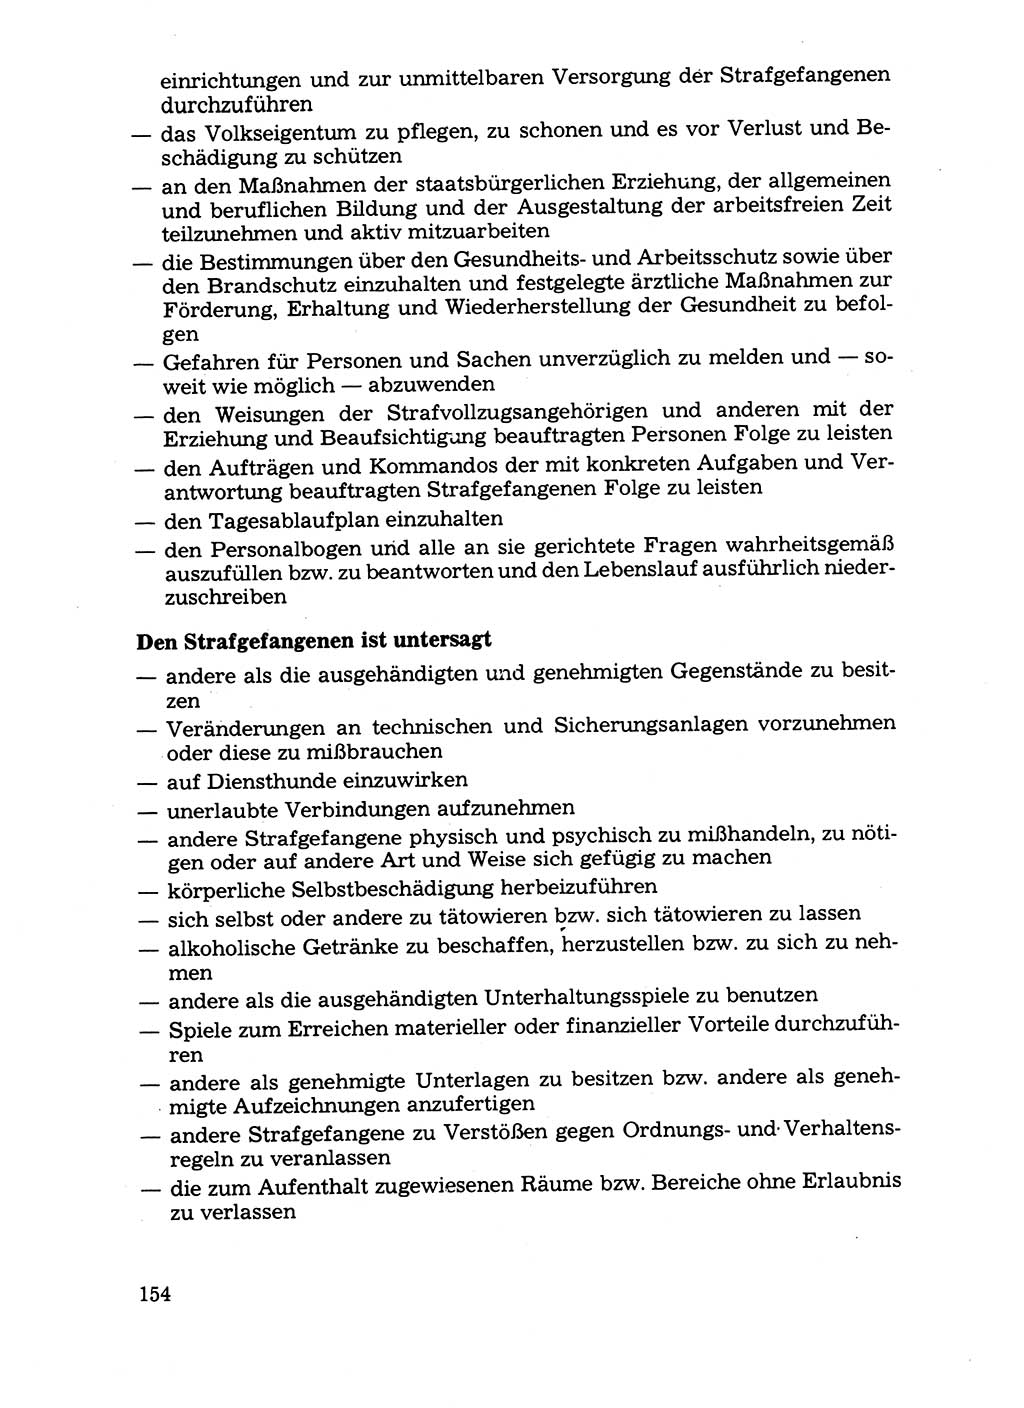 Handbuch für operative Dienste, Abteilung Strafvollzug (SV) [Ministerium des Innern (MdI) Deutsche Demokratische Republik (DDR)] 1981, Seite 154 (Hb. op. D. Abt. SV MdI DDR 1981, S. 154)